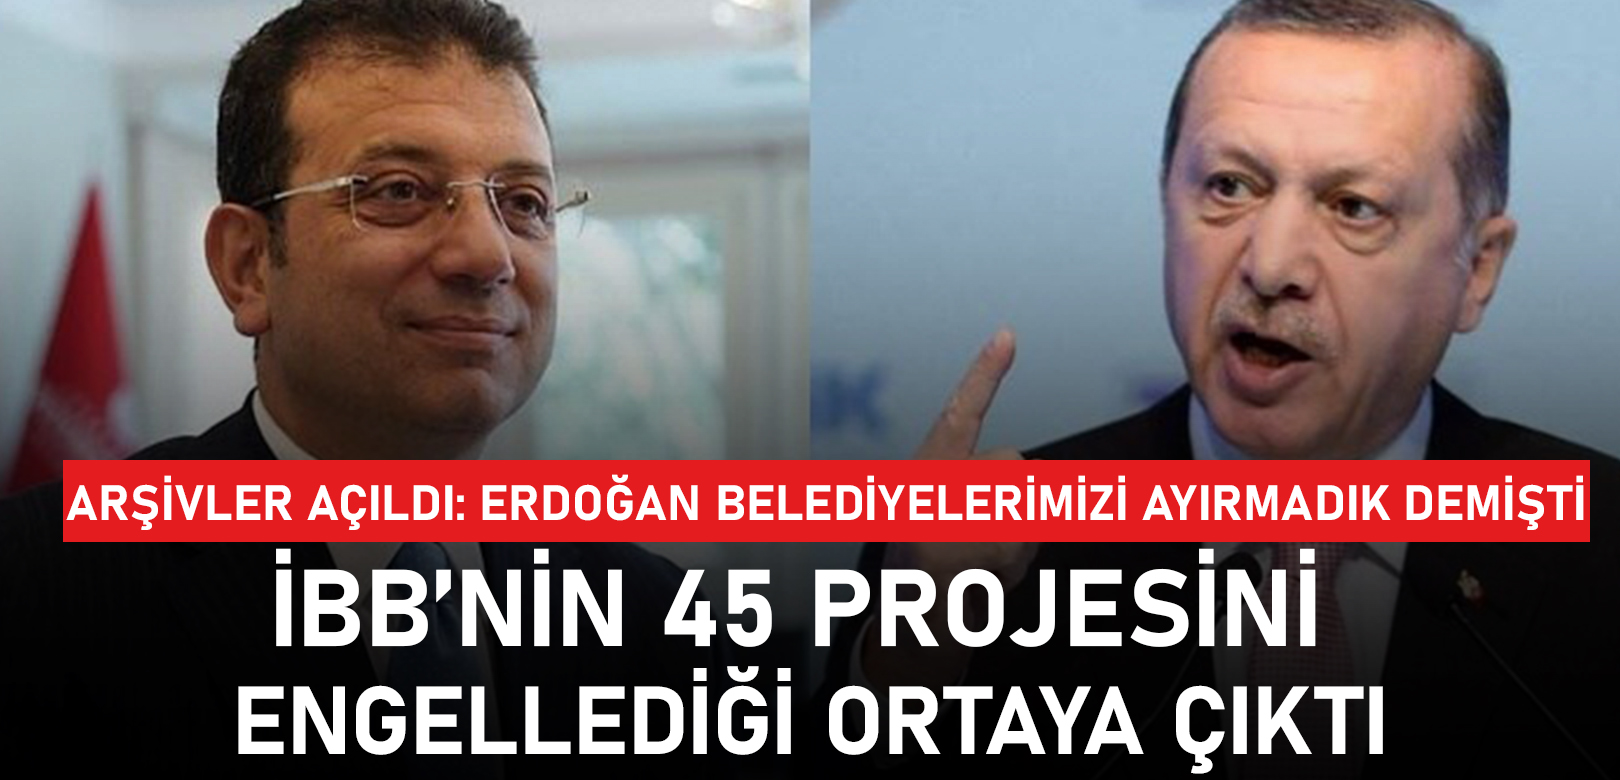 Erdoğan belediyelerimizi ayırmadık demişti: İBB’nin 45 projesini engellediği ortaya çıktı